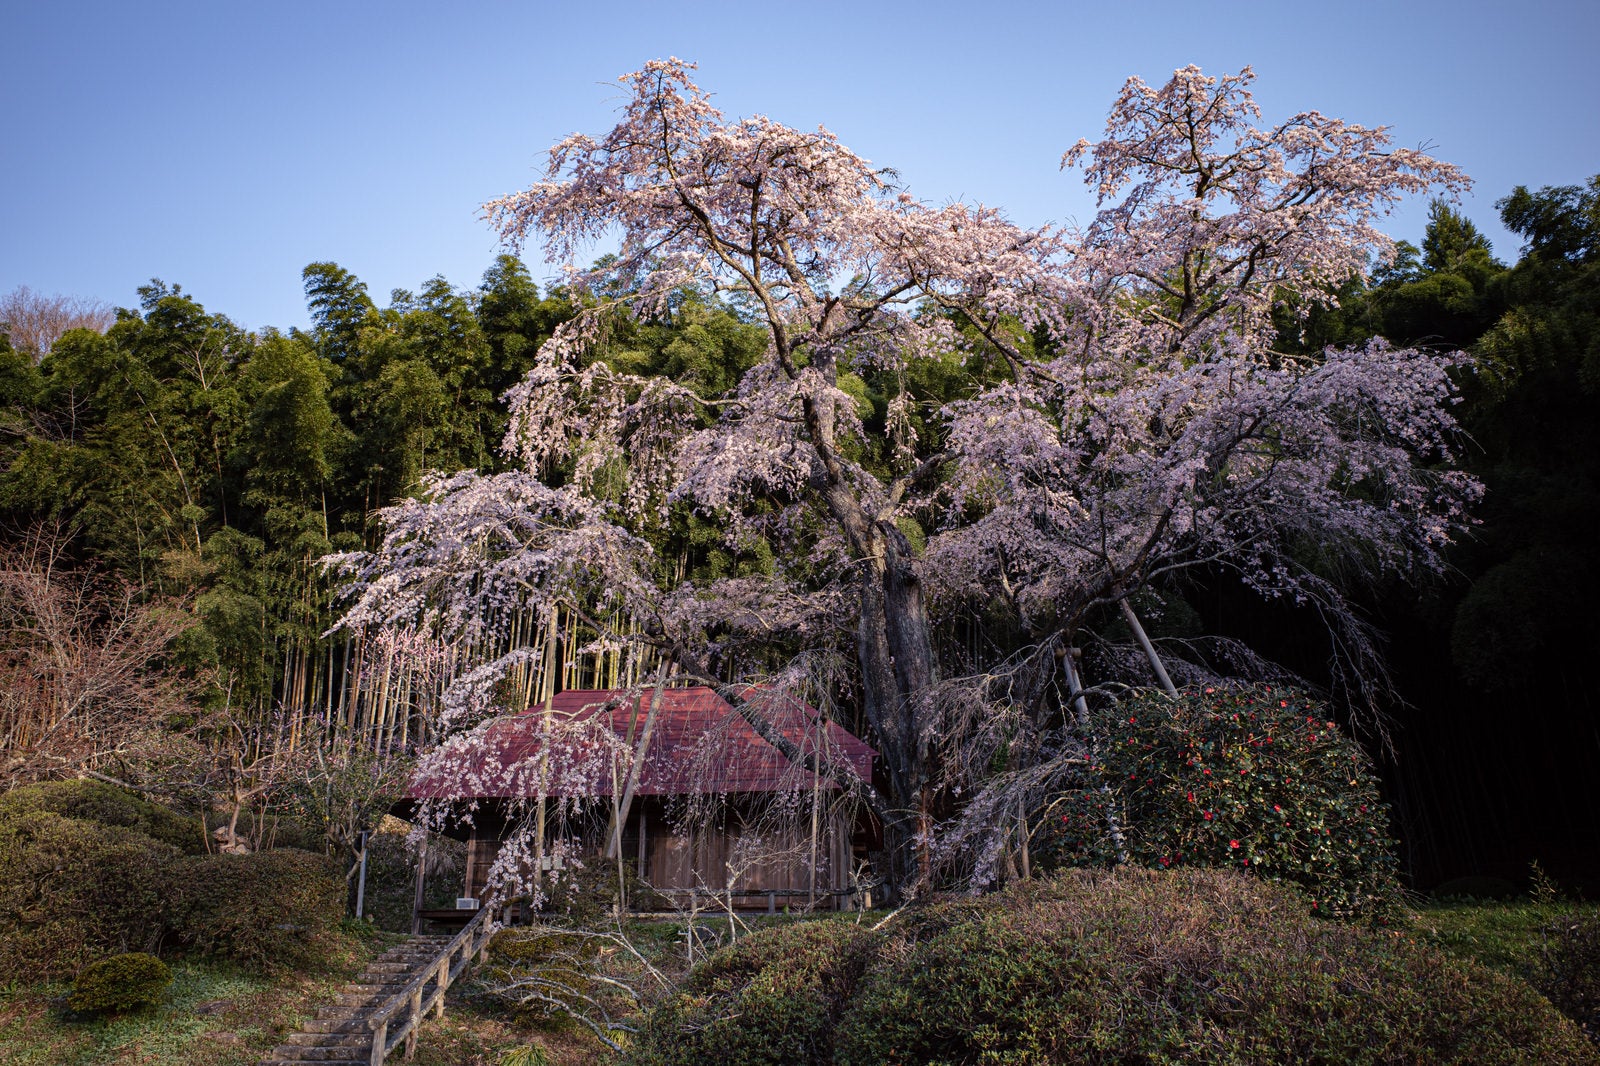 「雪村桜と竹林のコントラスト」の写真